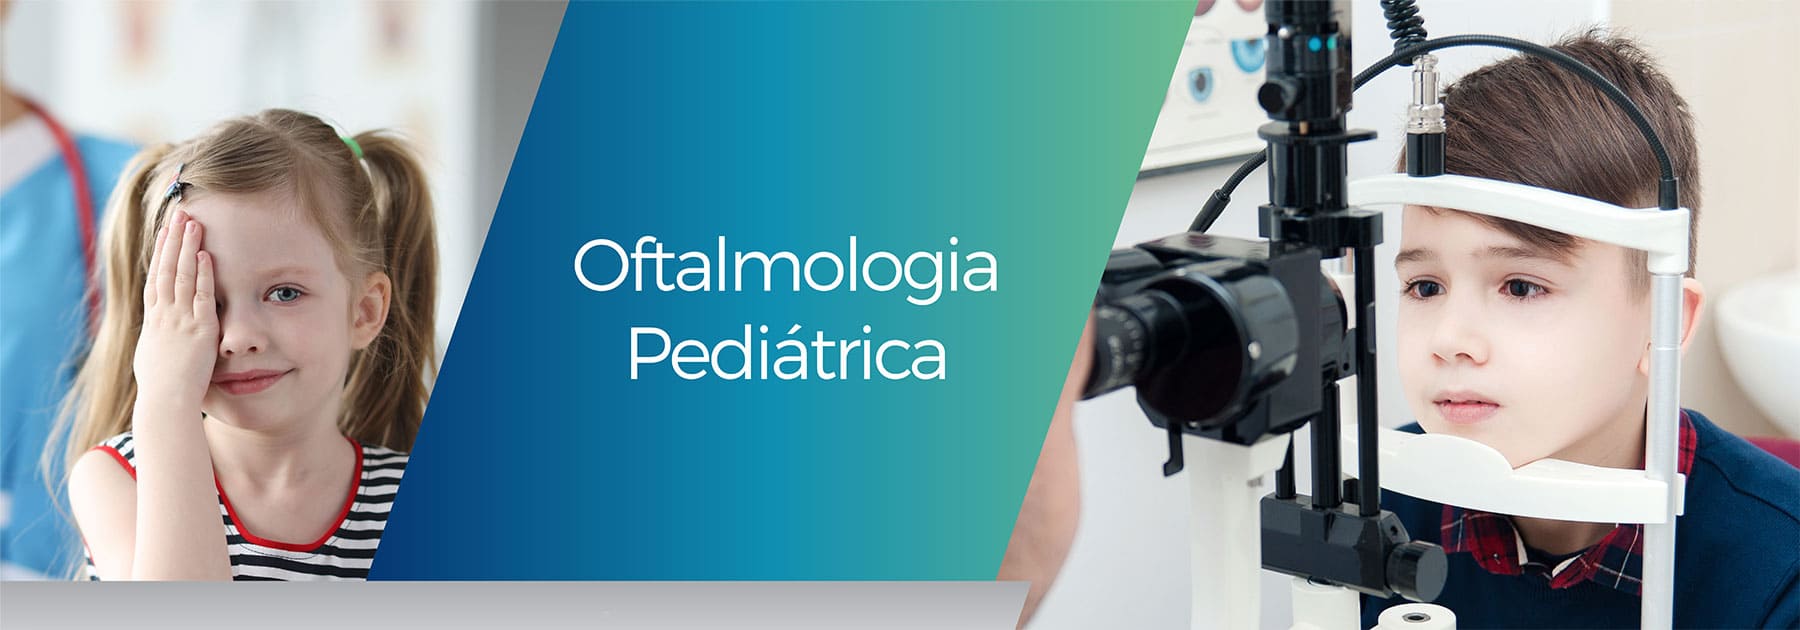 oftalmologia-pedriatria-medico-dos-olhos-atendimento-infantil-crianças-oftalmo-sorocaba